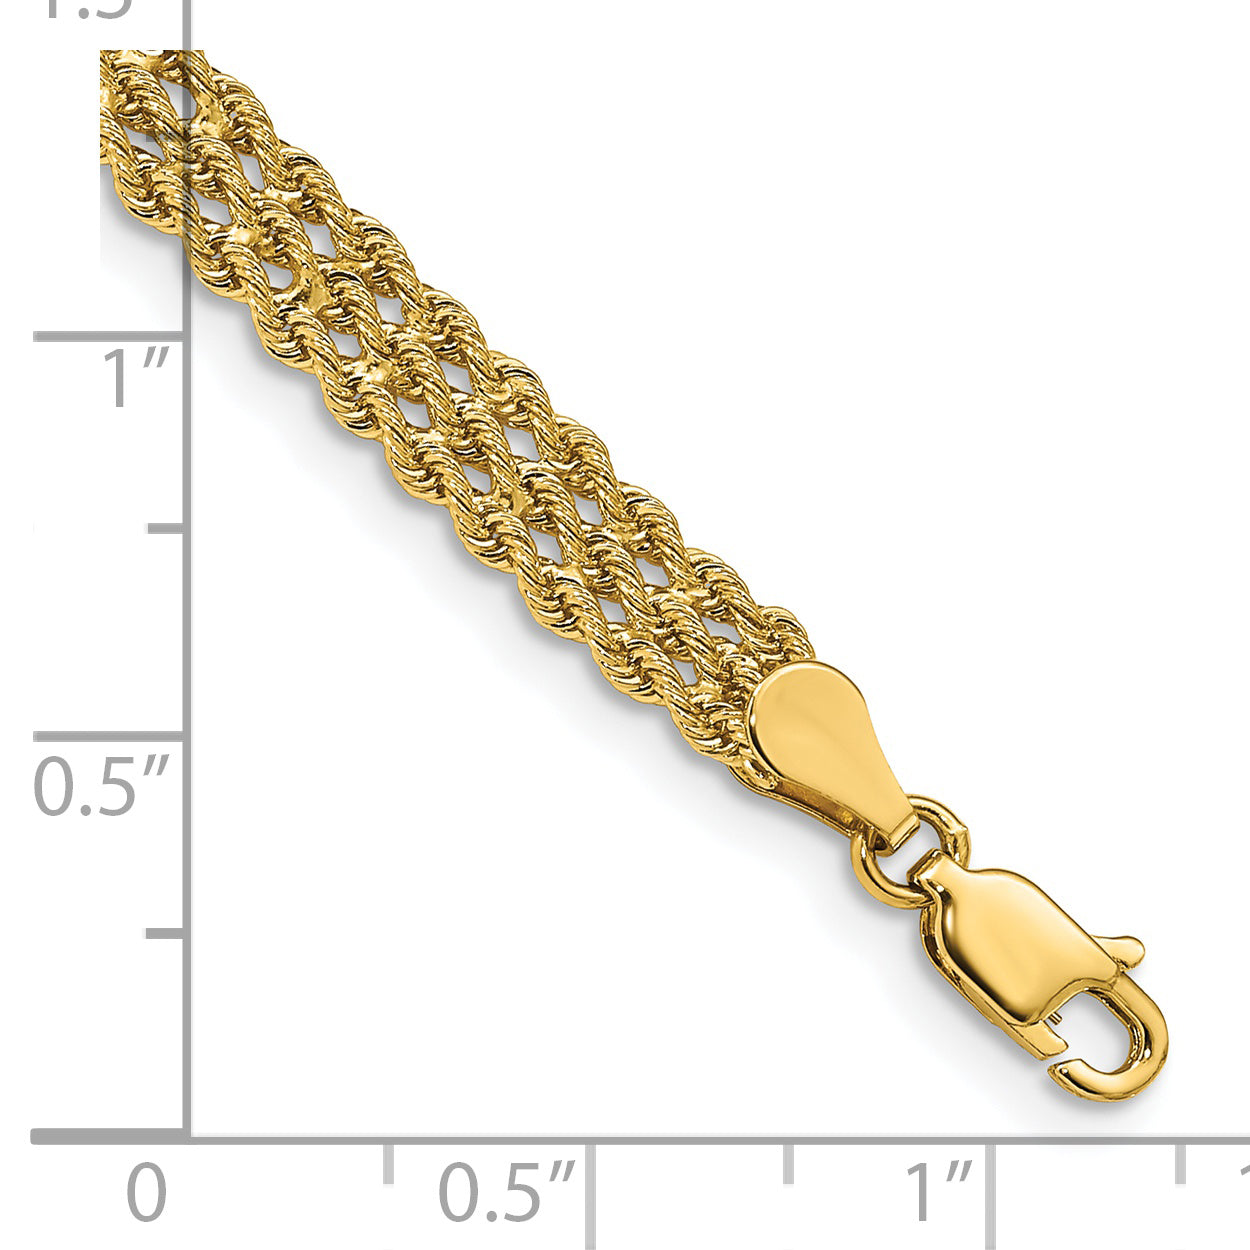 14k 5.5mm Triple Strand Rope Bracelet